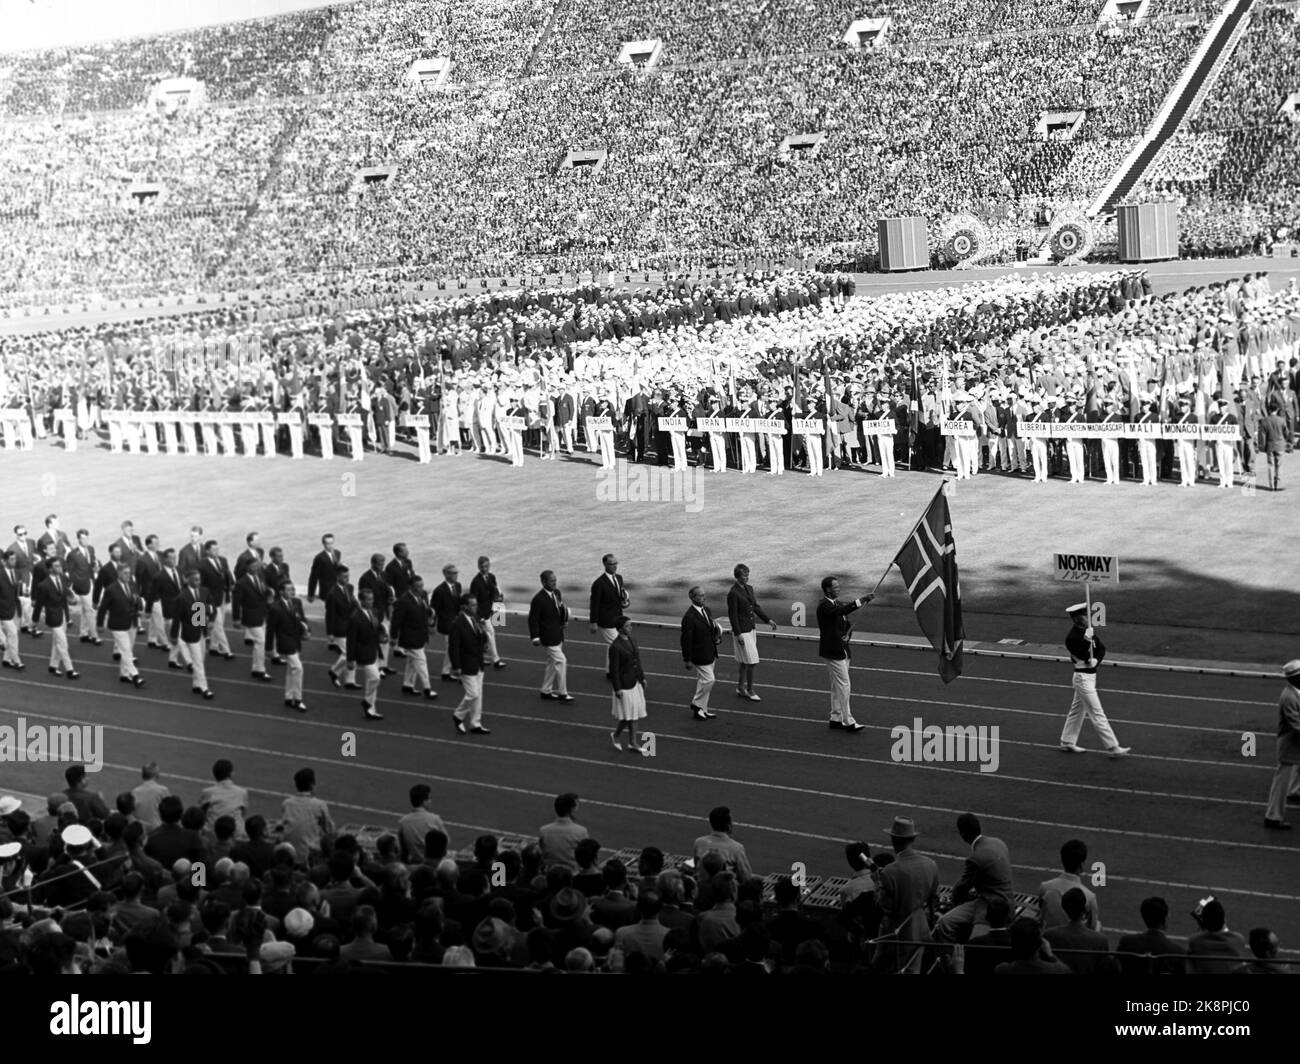 Tokyo, Japon Jeux Olympiques d'été 1964 à Tokyo. La cérémonie d'ouverture officielle. Le prince héritier Harald participe à l'équipe olympique norvégienne de voile et est le porteur du drapeau de l'équipe norvégienne. Photo archive NTB / ntb Banque D'Images